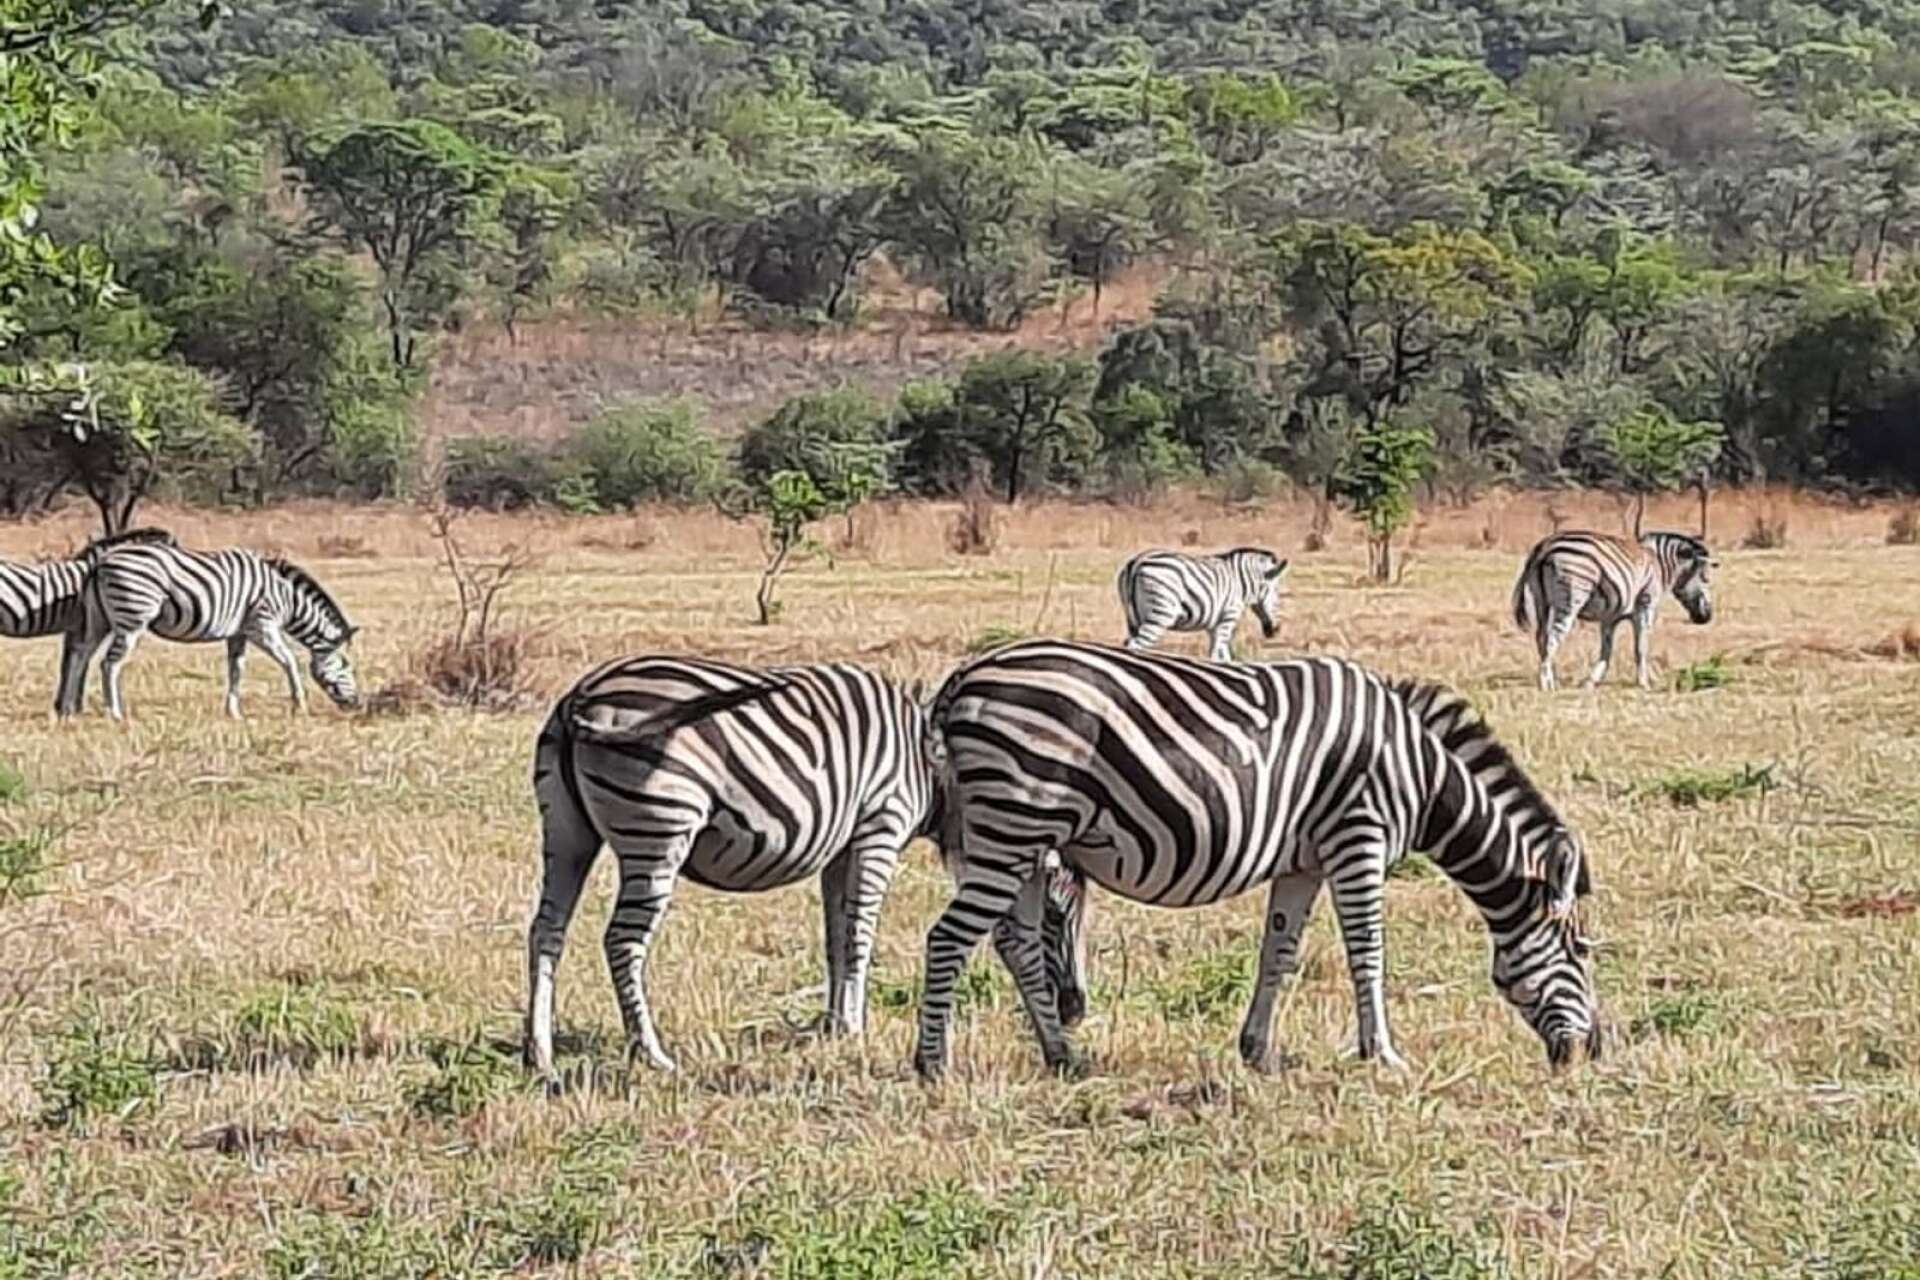 Fridfullt betande zebror fångades på bild under en av safariturerna.